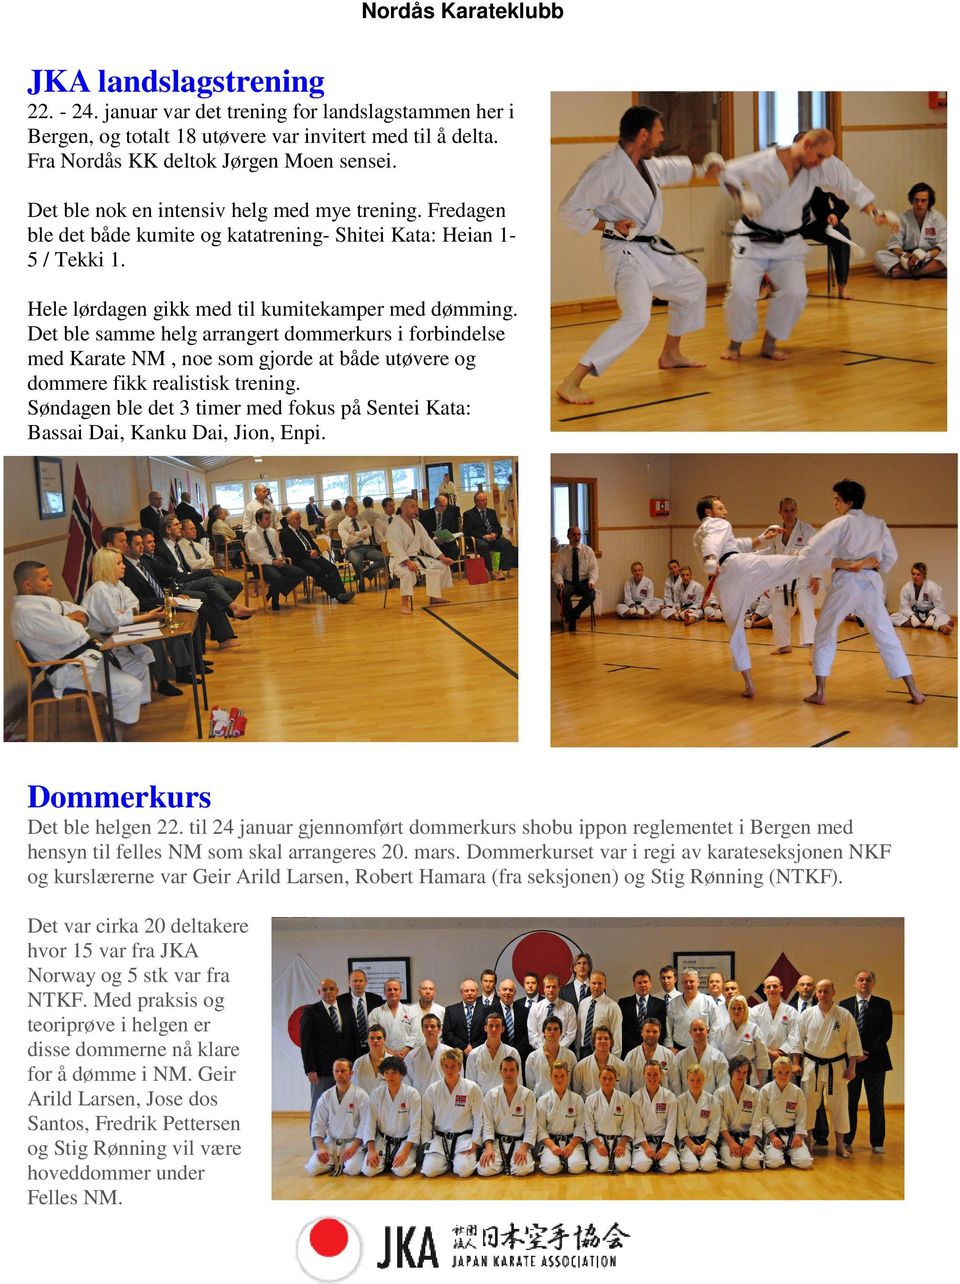 Det ble samme helg arrangert dommerkurs i forbindelse med Karate NM, noe som gjorde at både utøvere og dommere fikk realistisk trening.